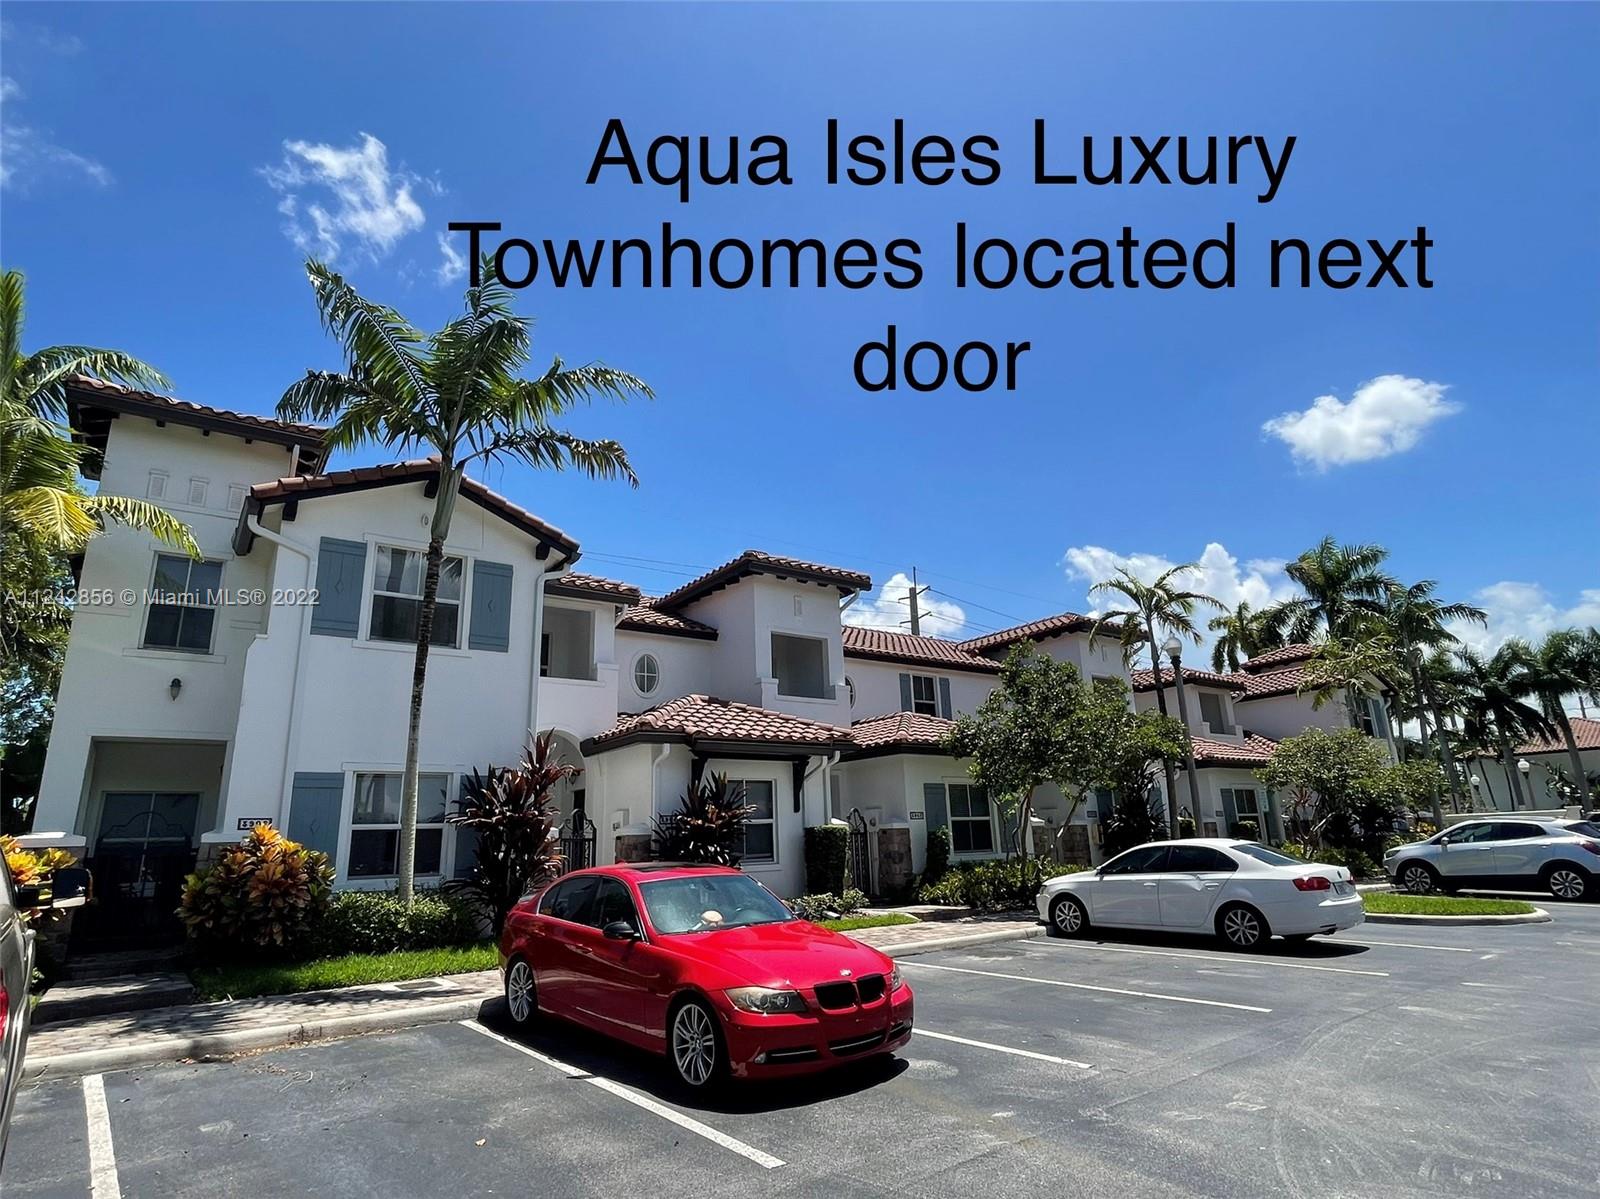 Aqua Isles Luxury Townhomes next door